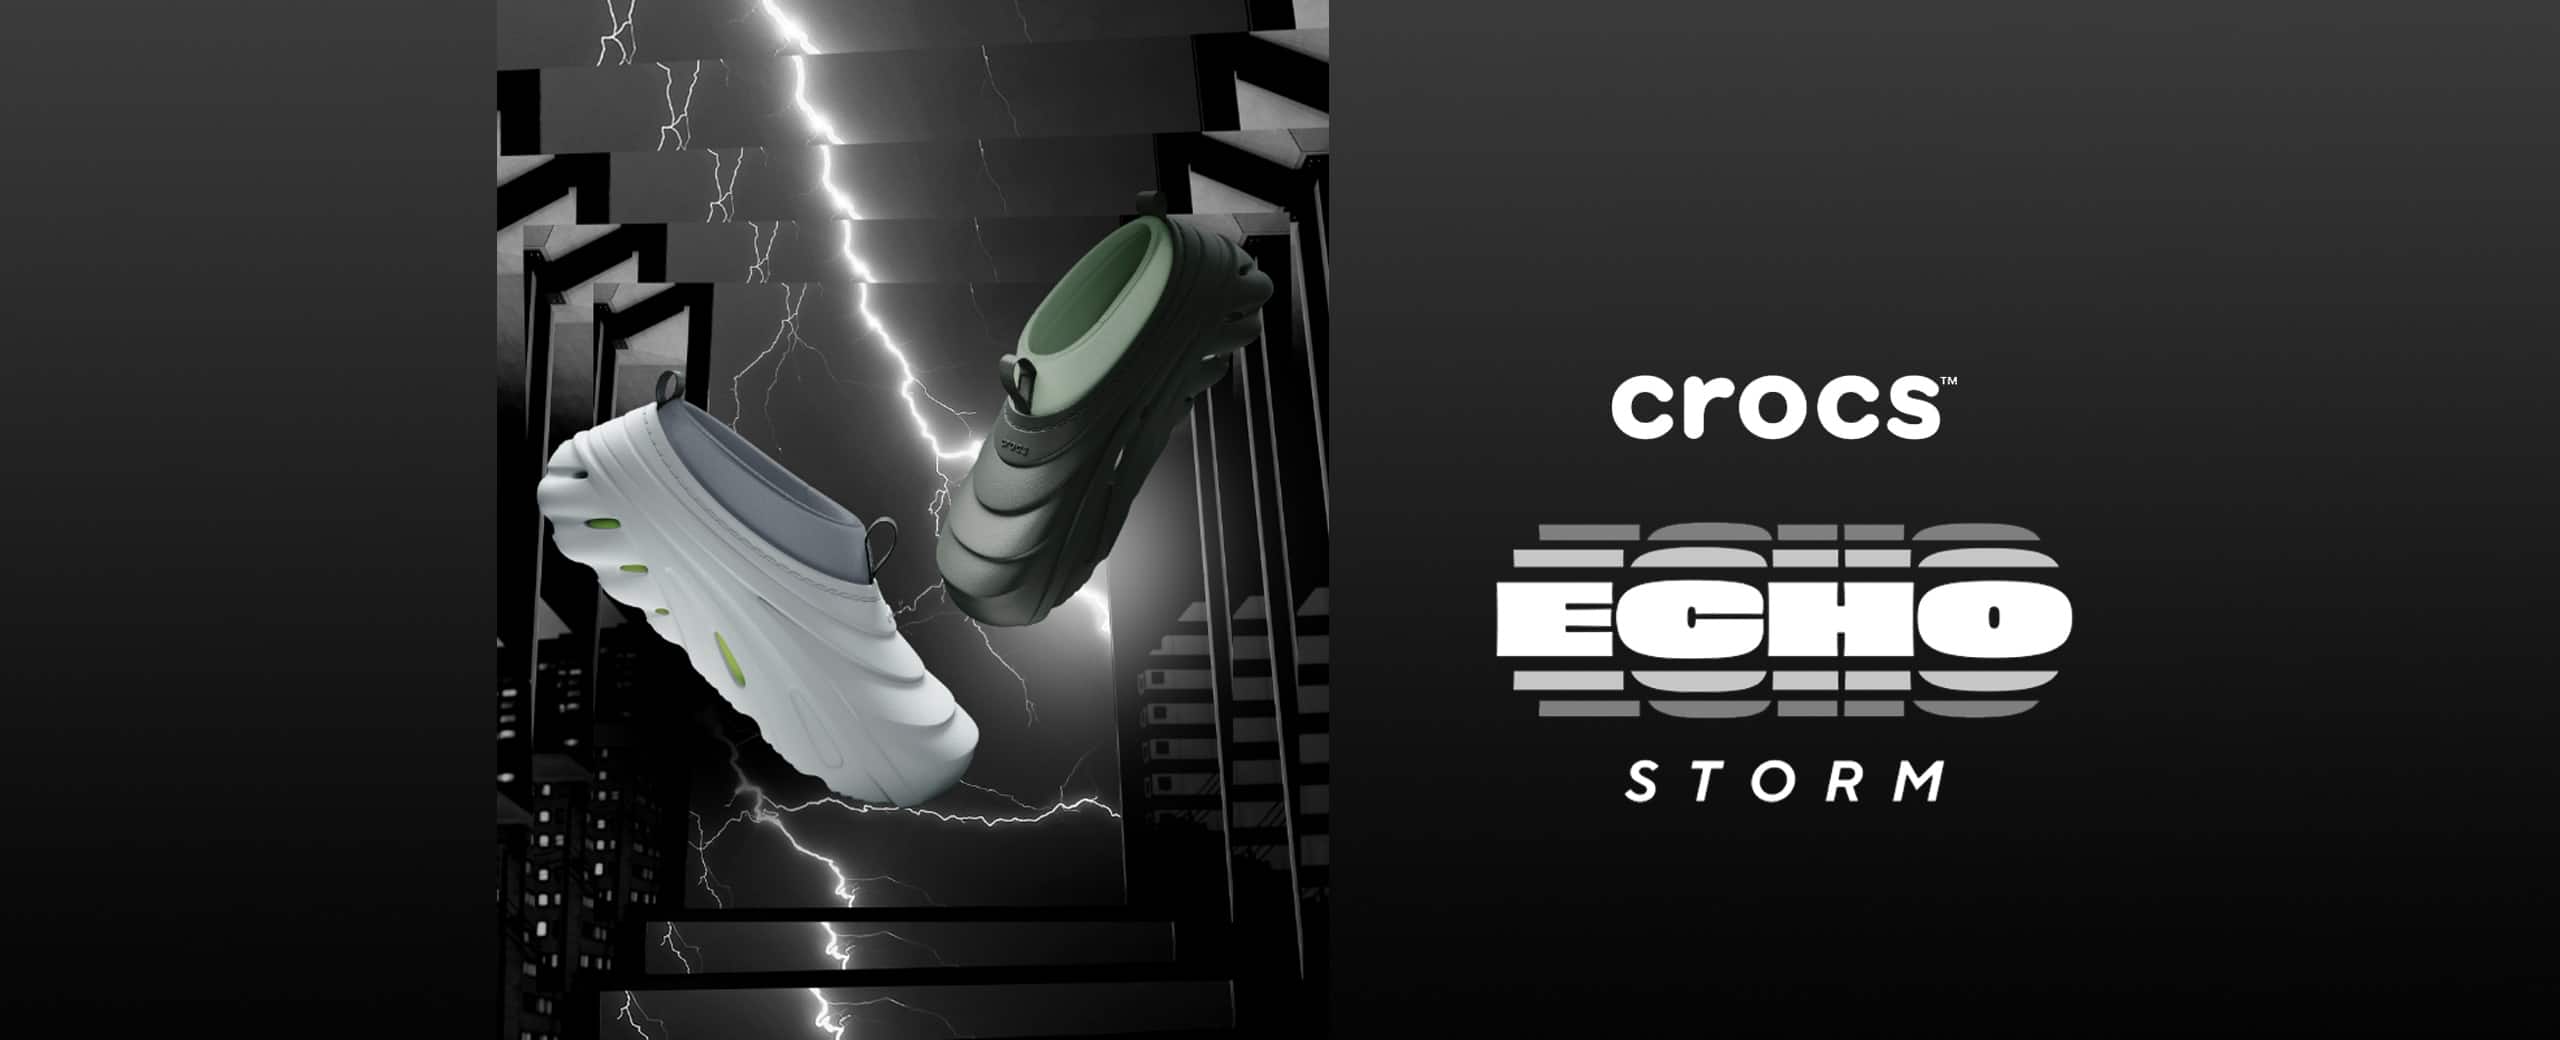 crocs Echo Storm